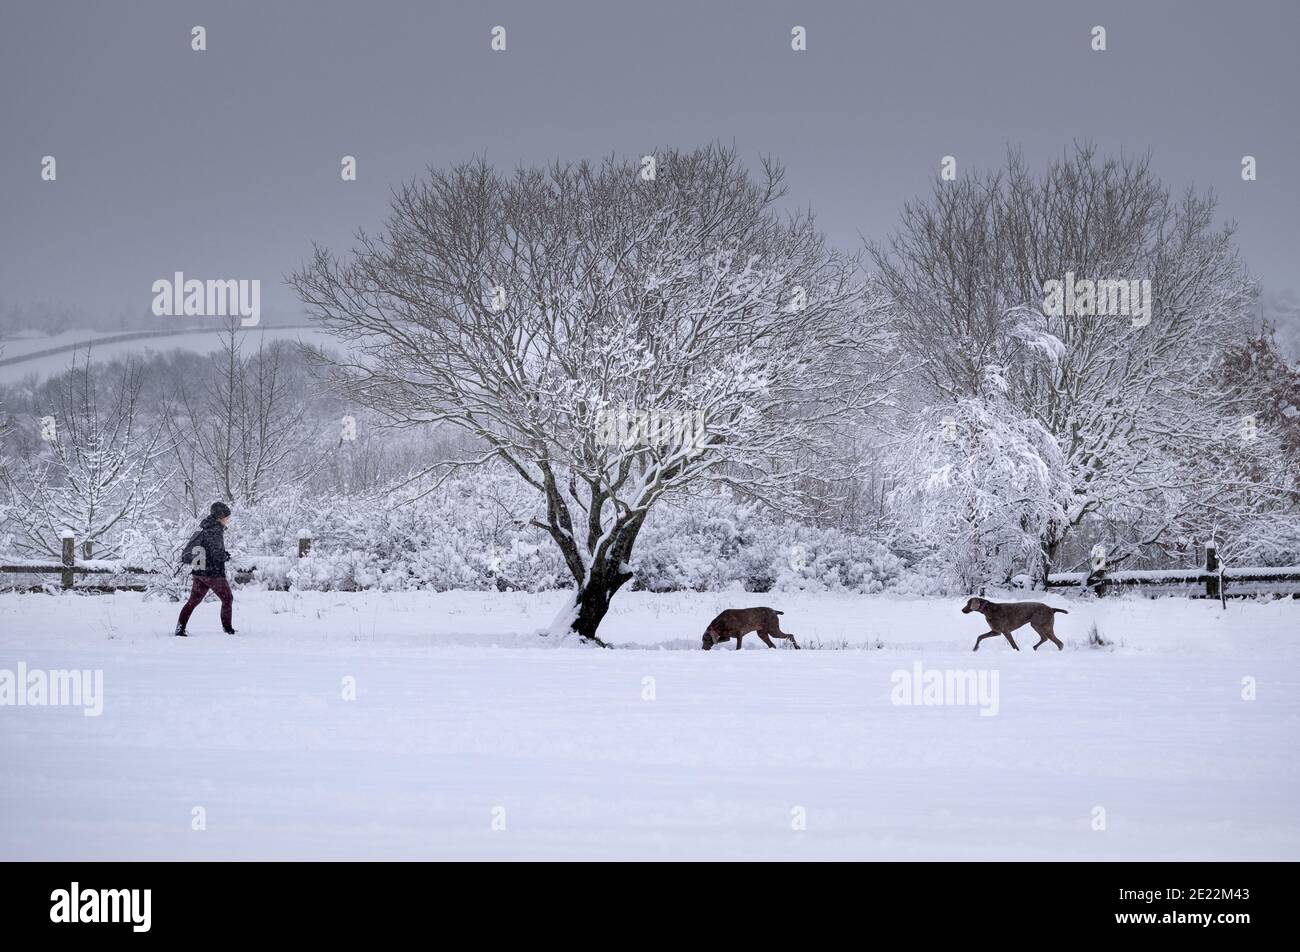 En hiver, exercice / activité en plein air. Femme et chien-pointeur marchant dans la neige profonde Banque D'Images